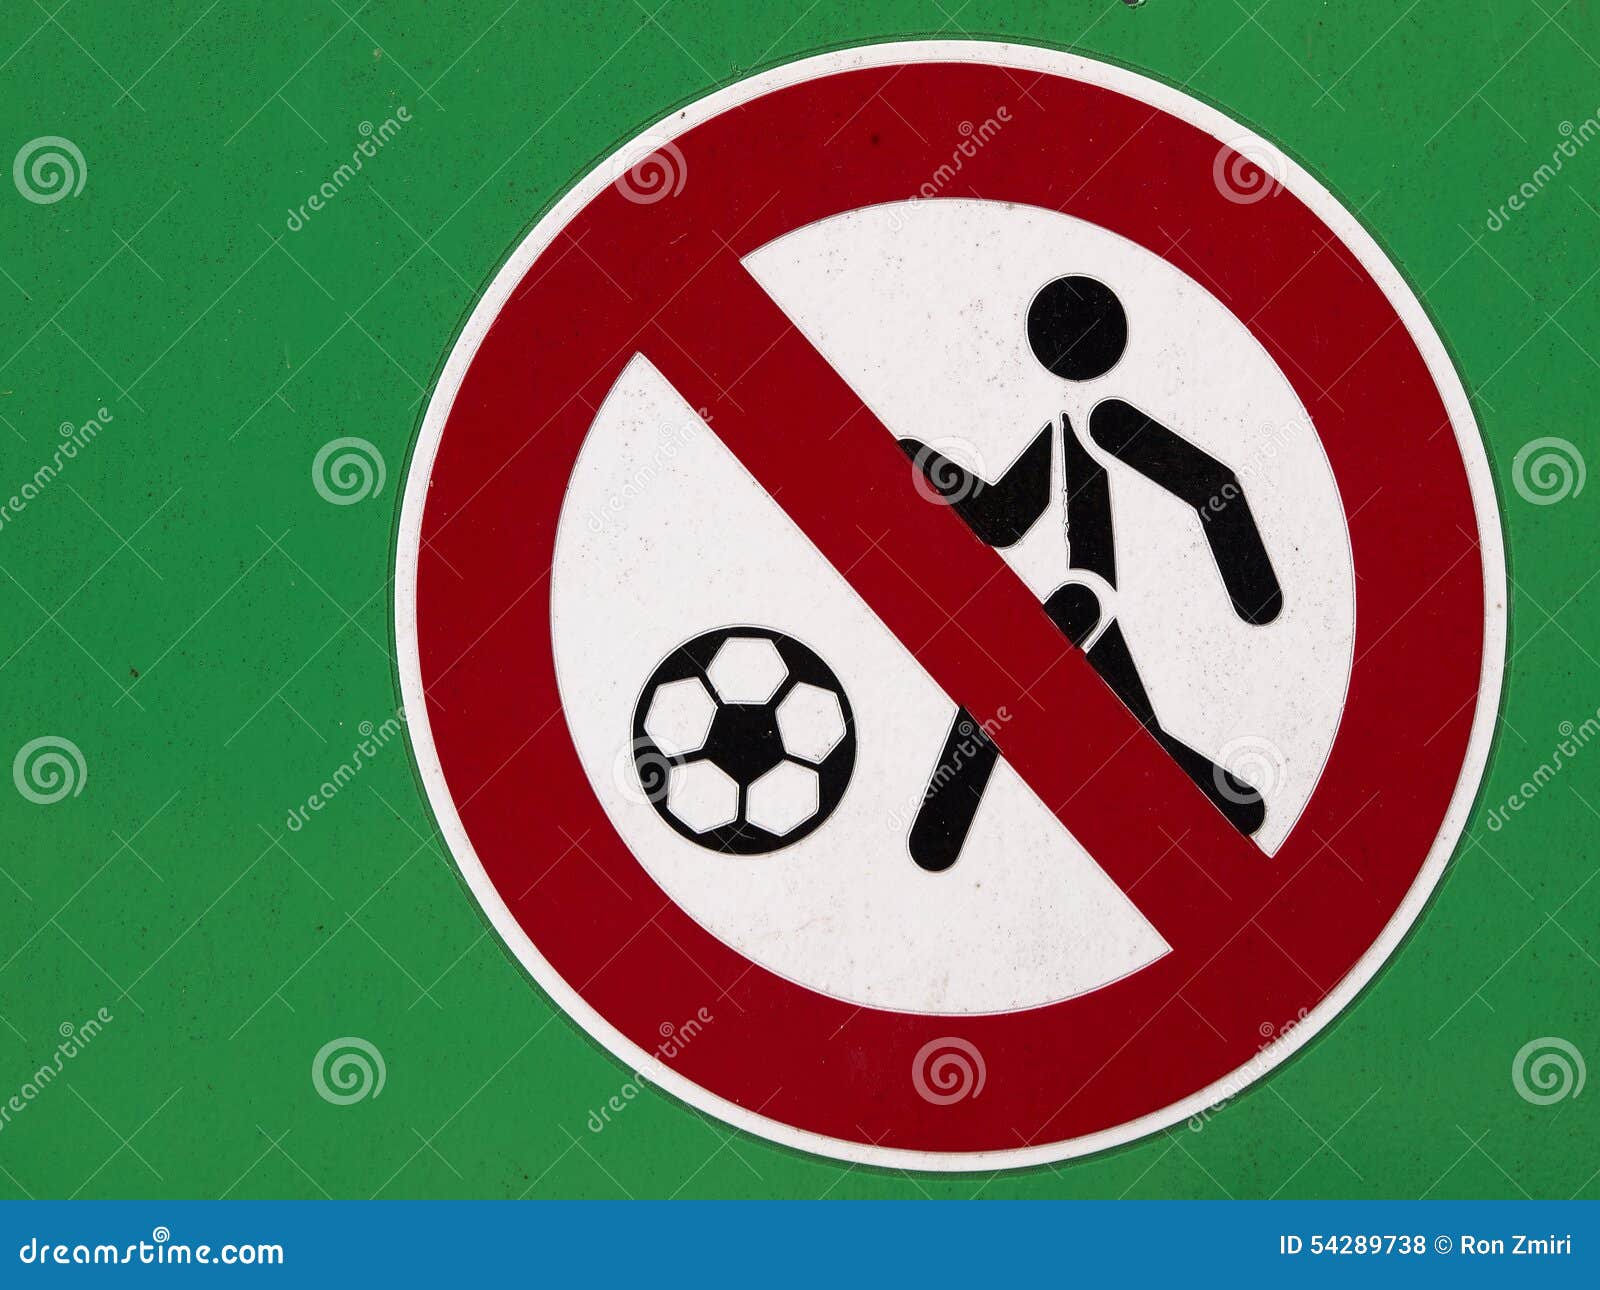 Игра под запрет. Запрет футбола. Запрет на мяч знак. Футбол запрещен. Запрещающие знаки на стадионе.